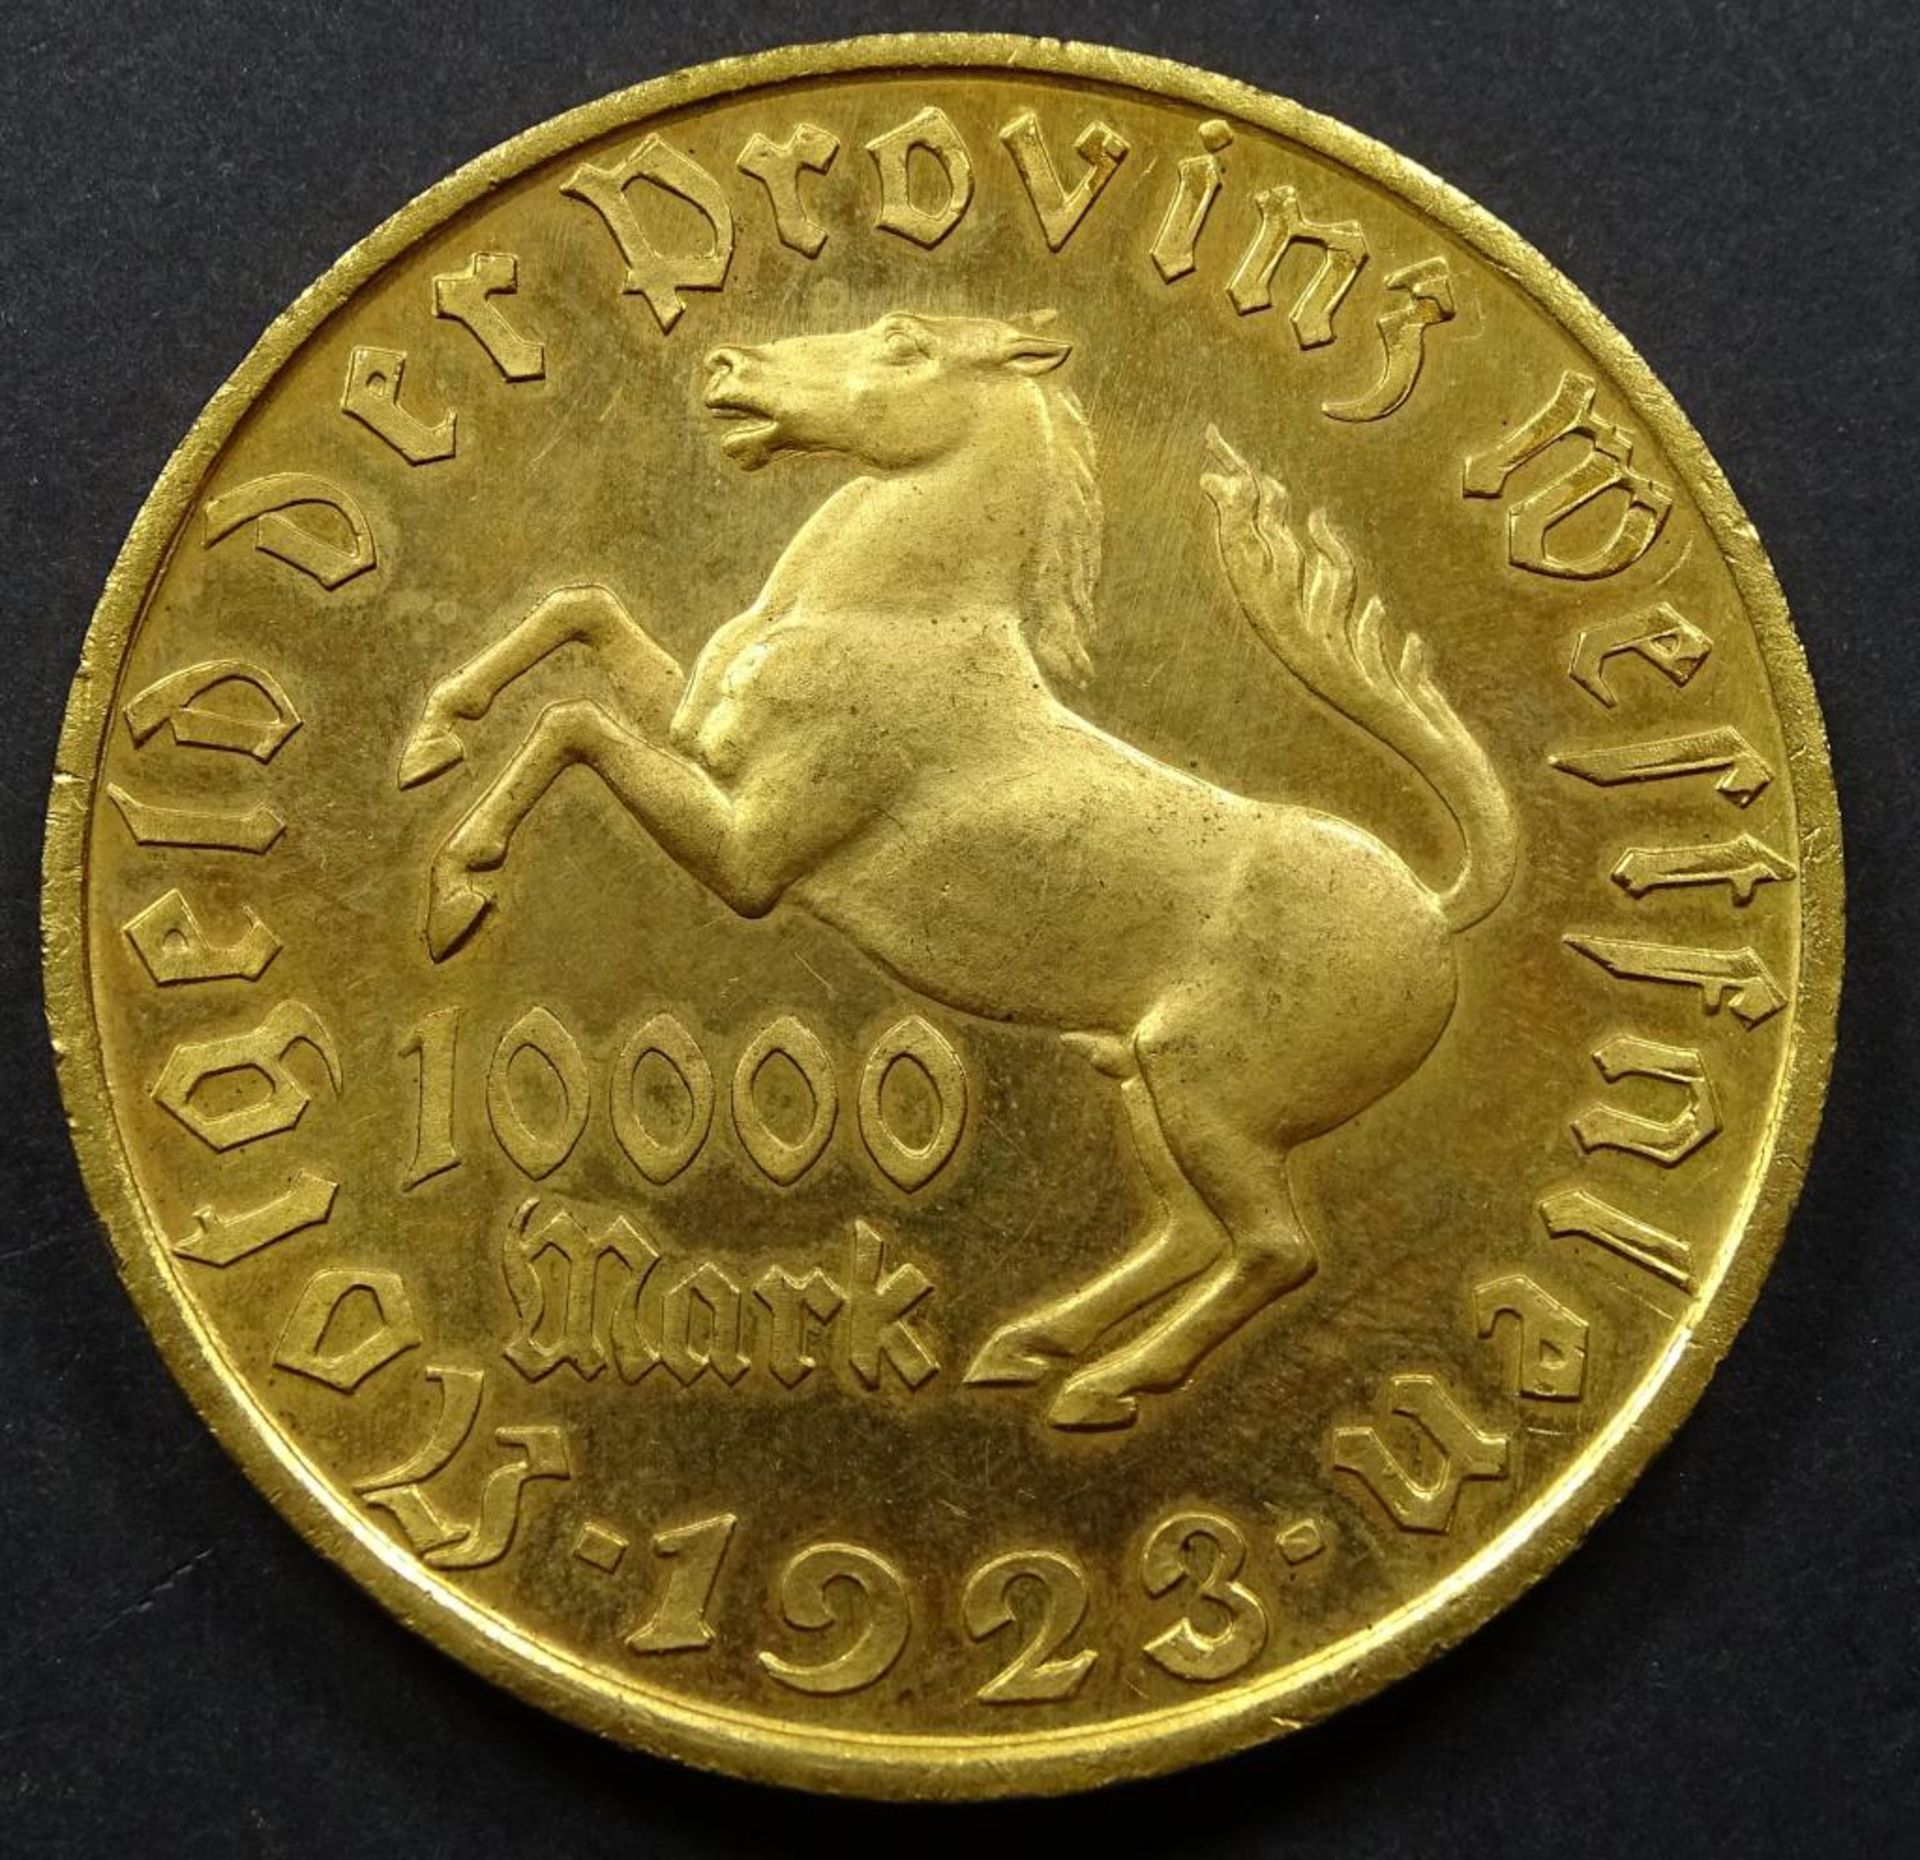 10.000 Mark Notgeld Münze,d-44,5mm, 192